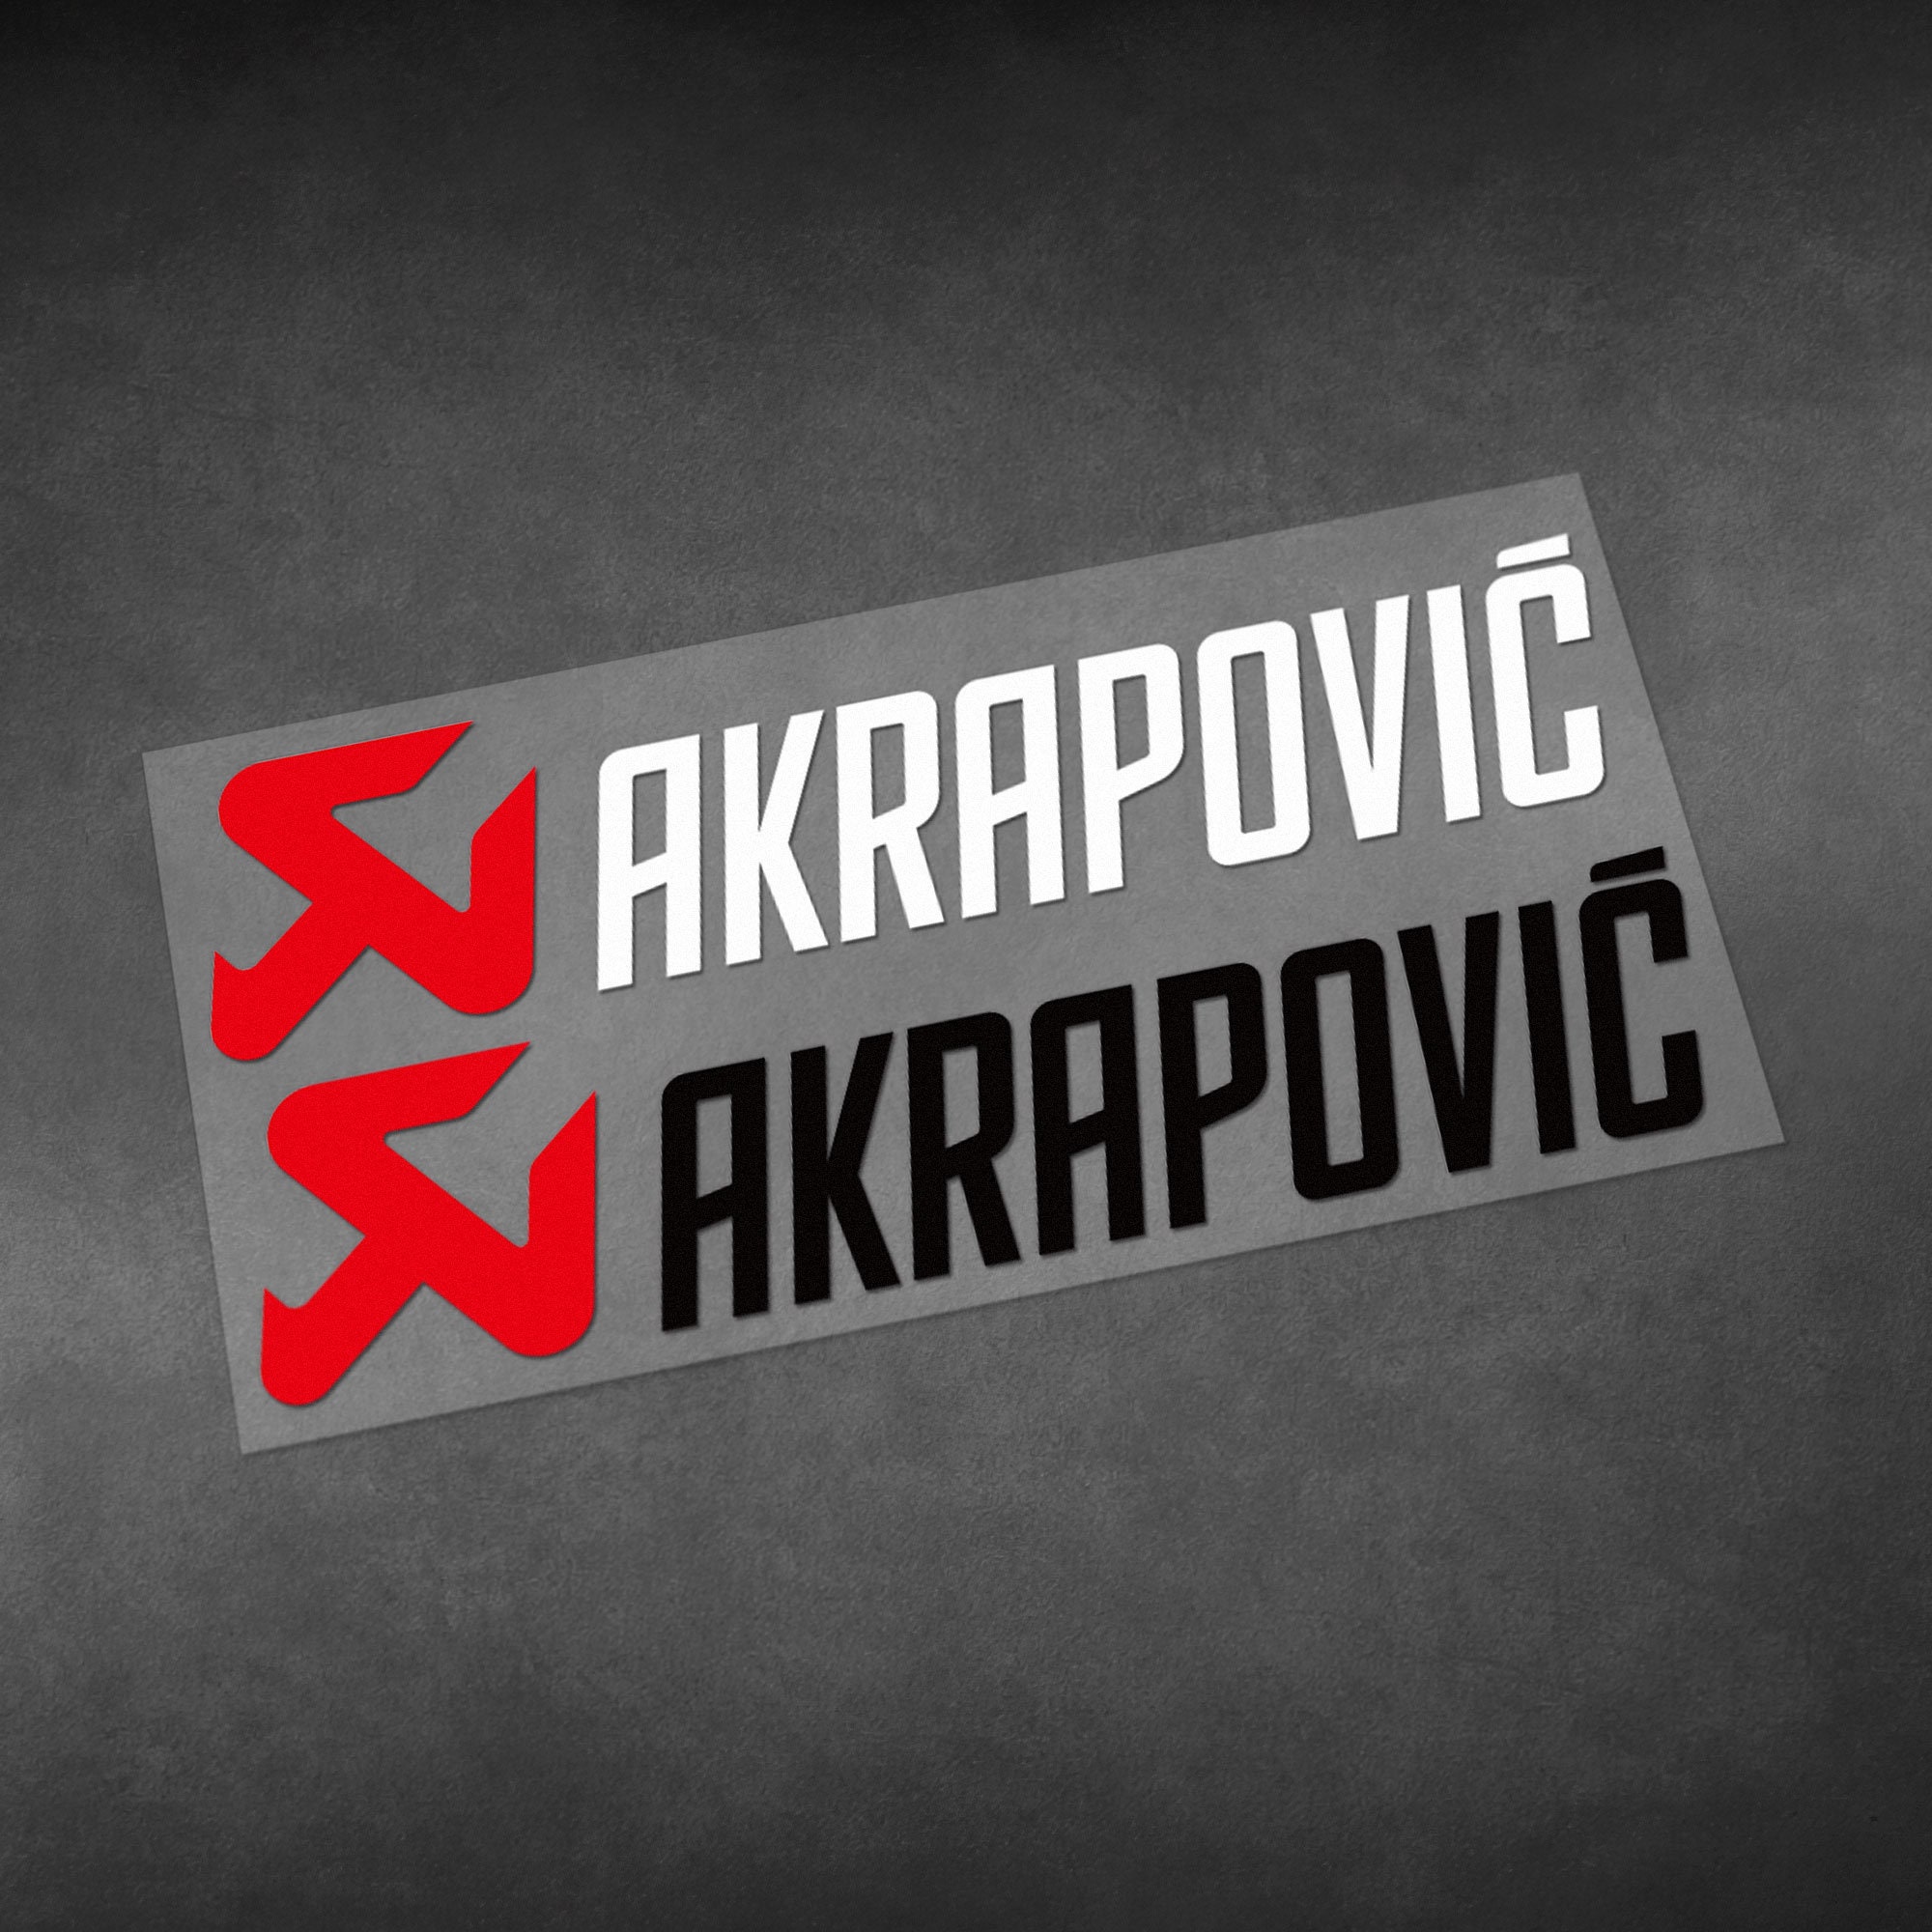 Akrapovic Stickers 